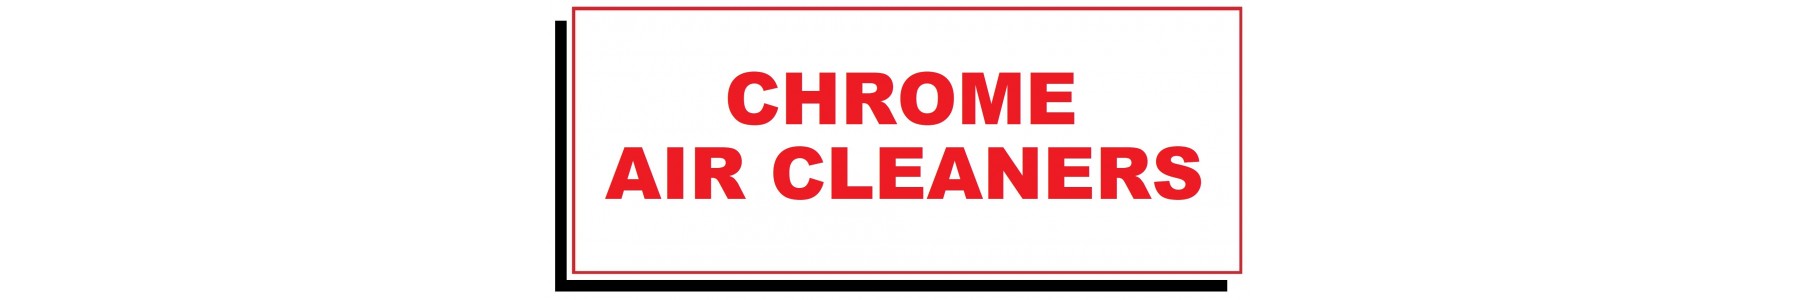 CHROME AIR CLEANERS